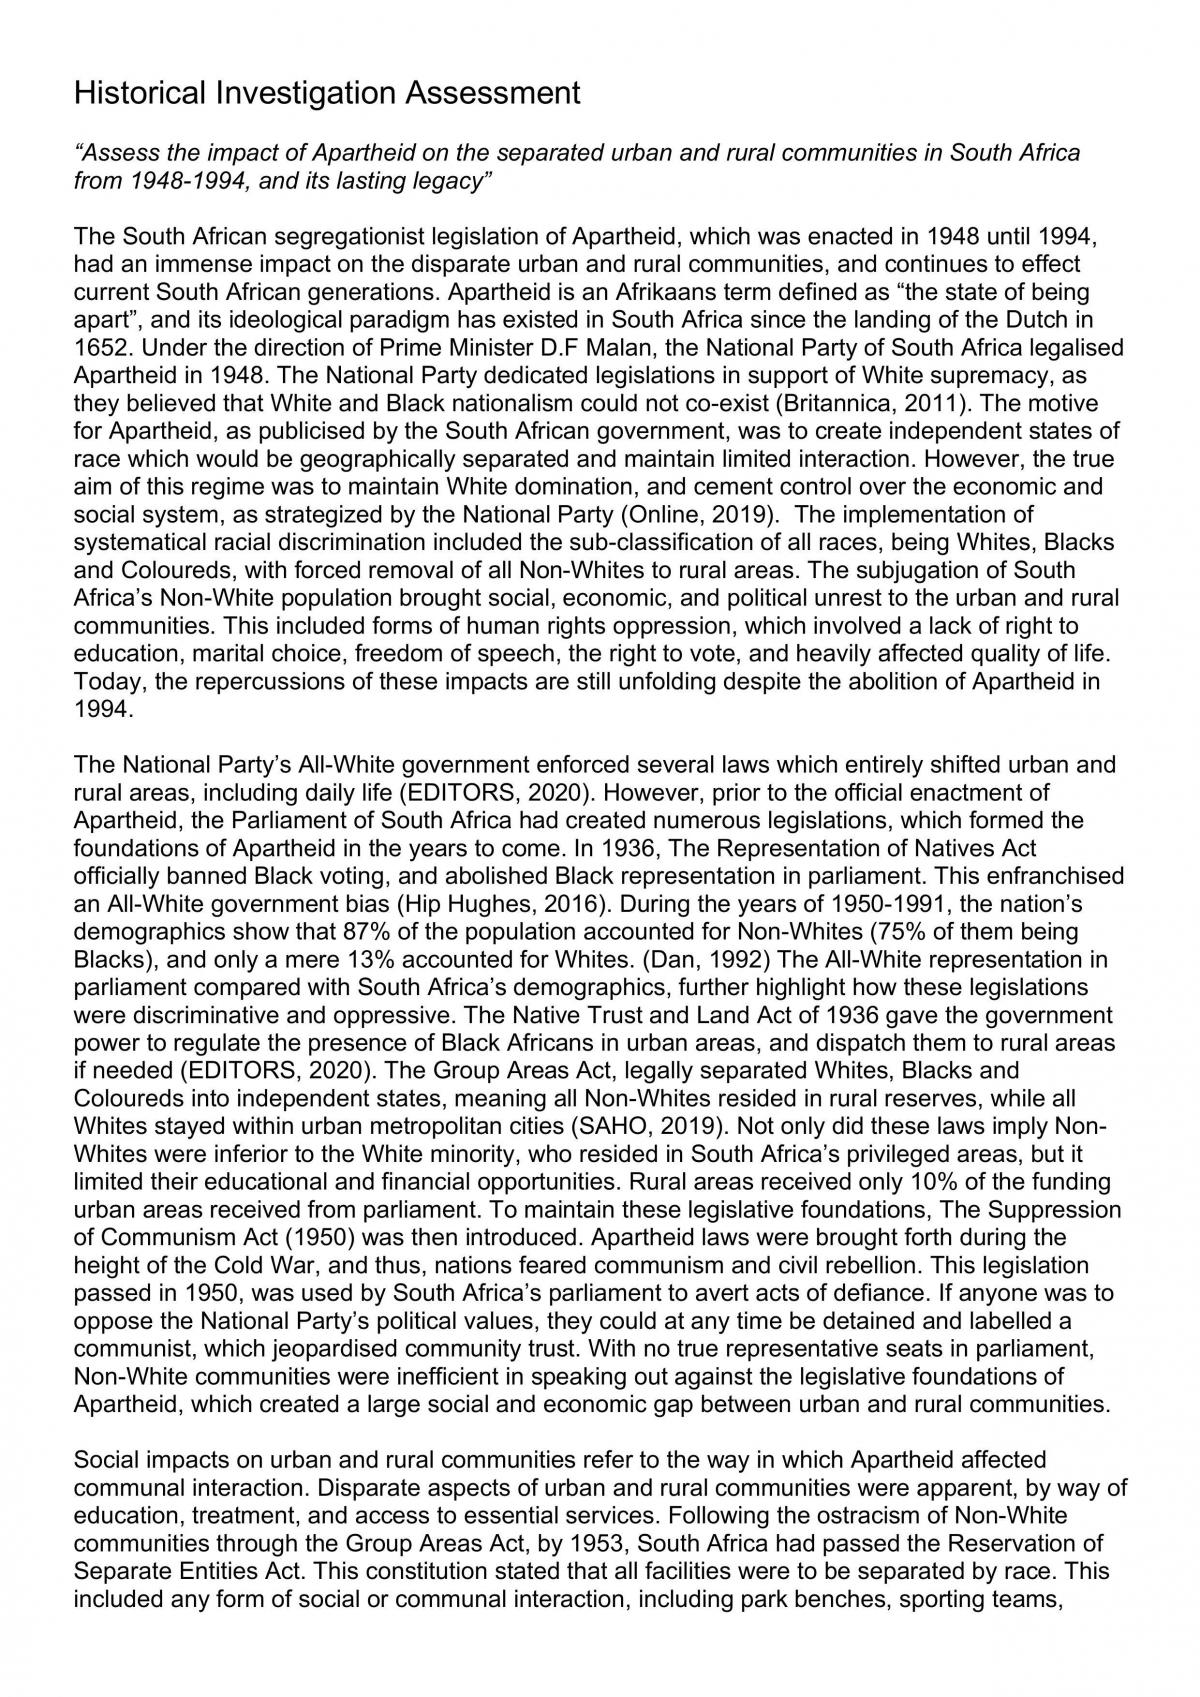 apartheid essay grade 11 pdf download